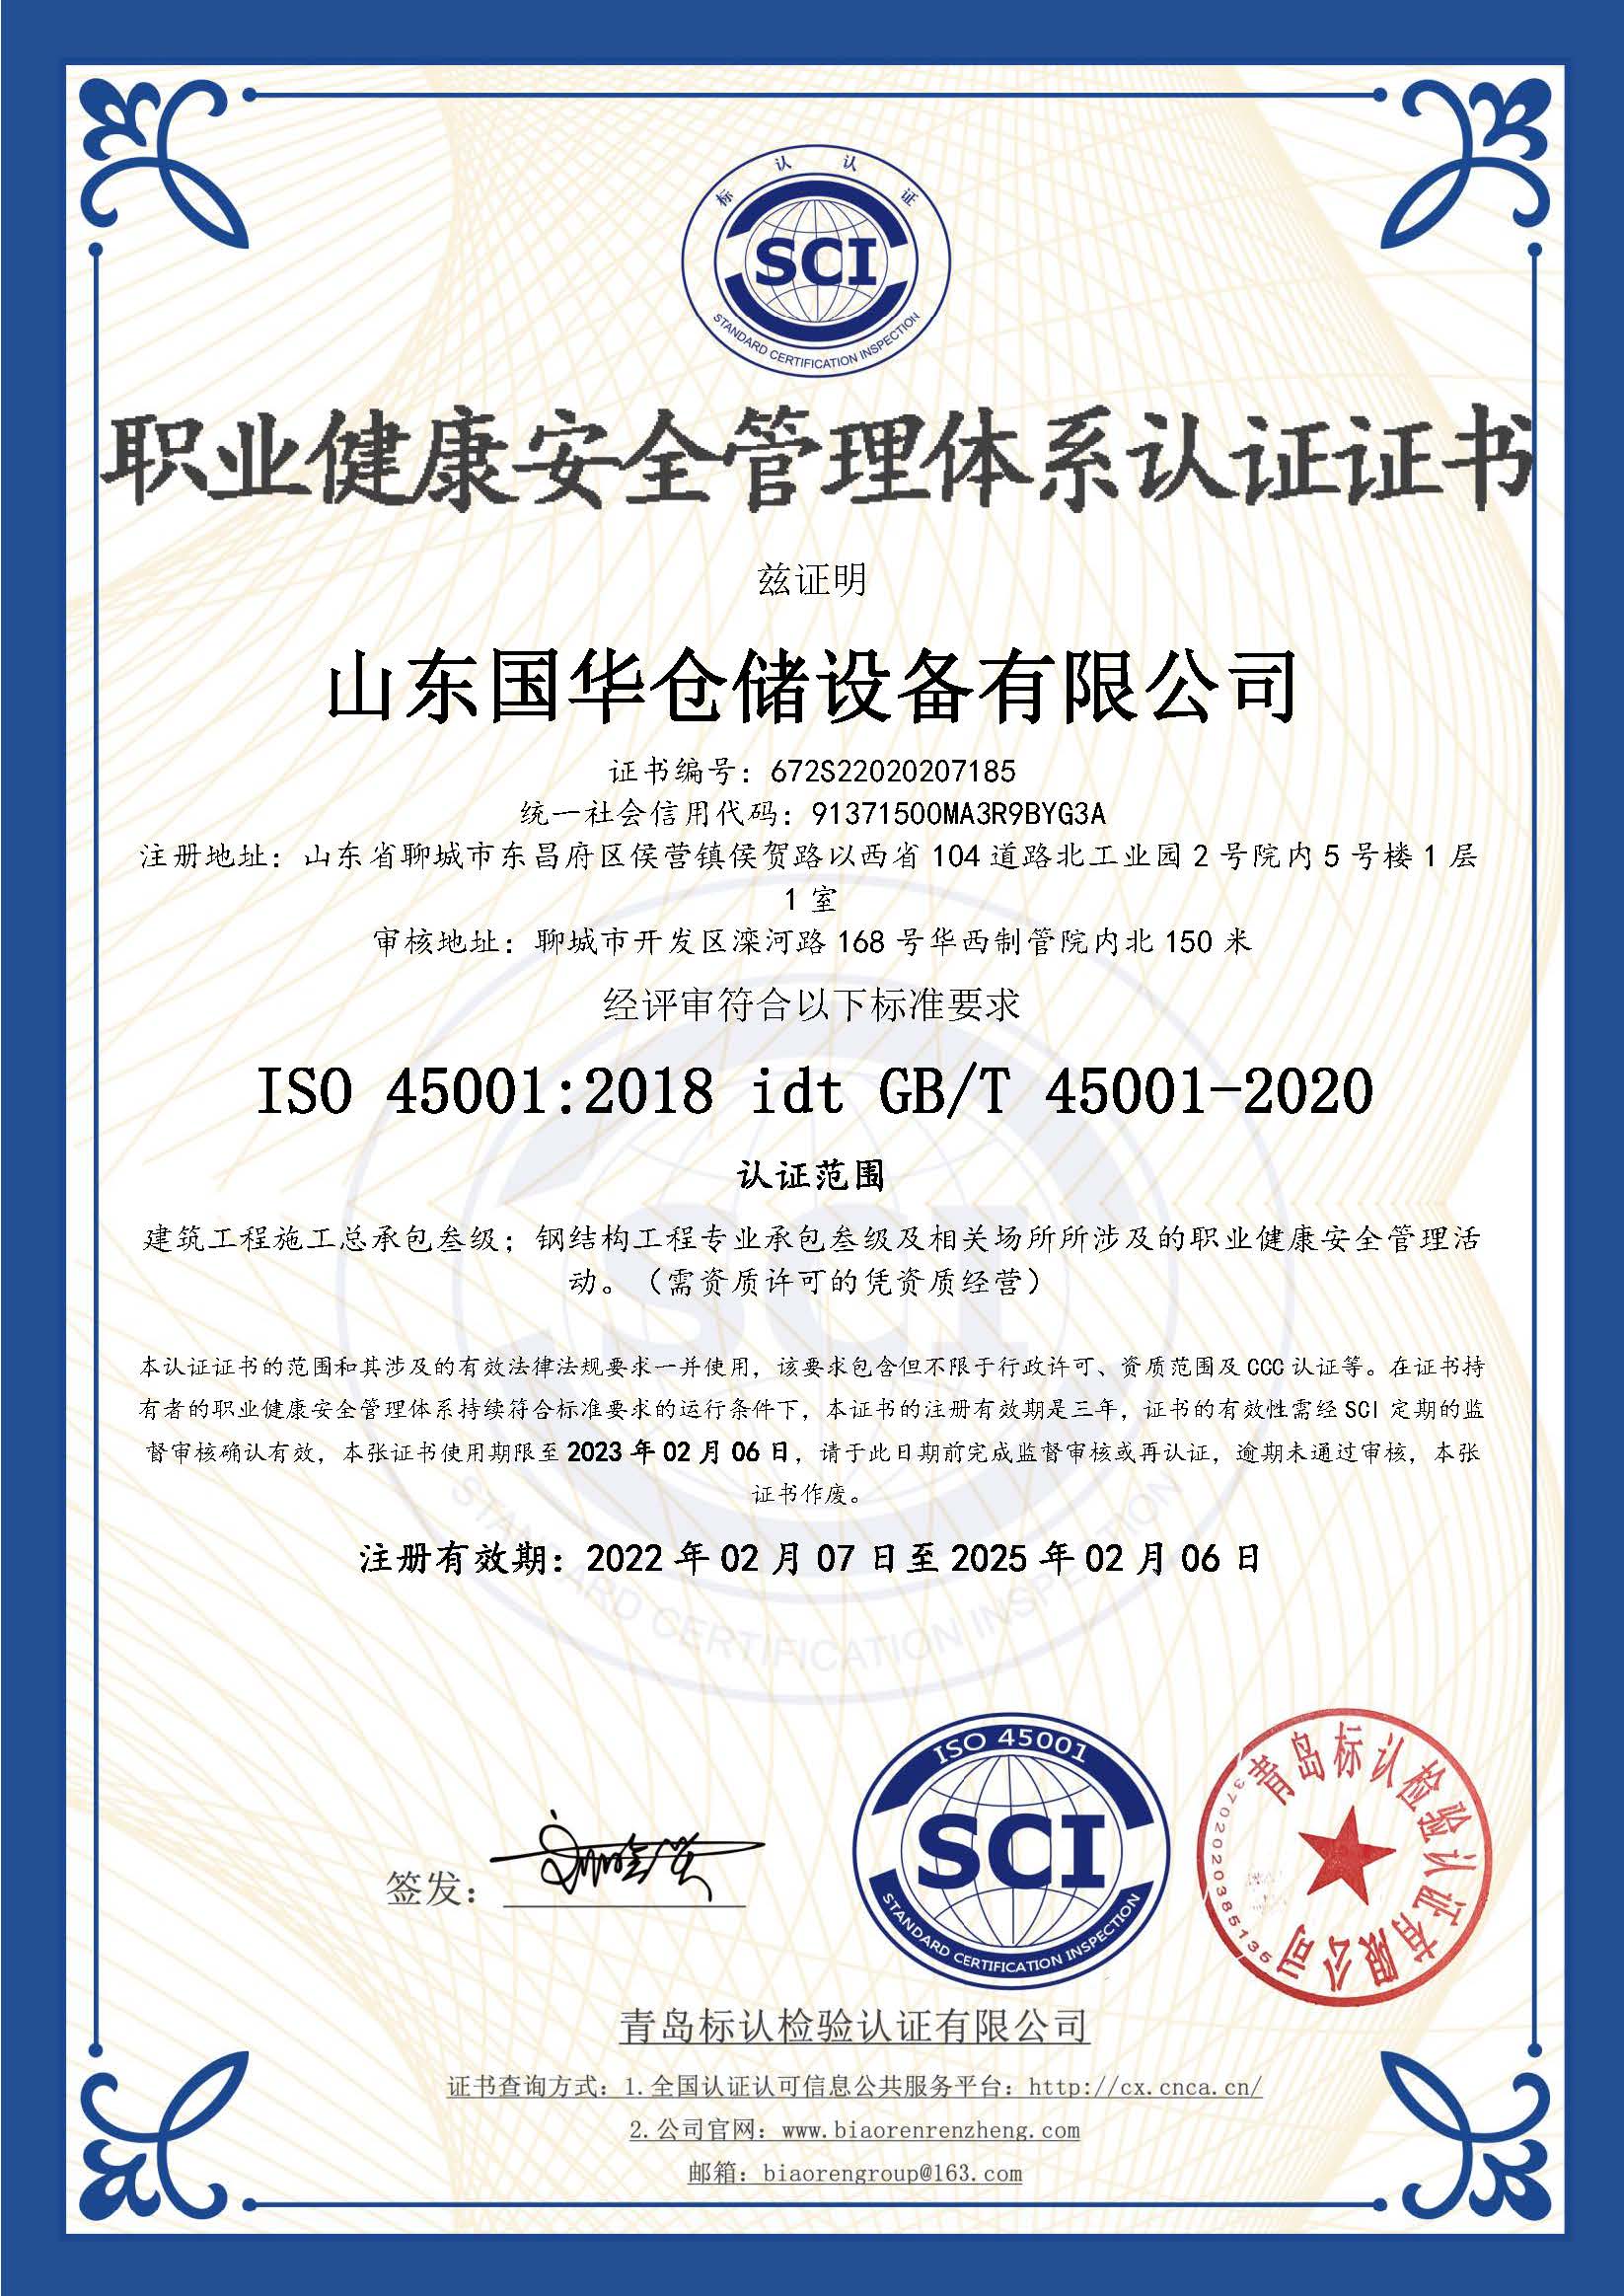 阳泉钢板仓职业健康安全管理体系认证证书